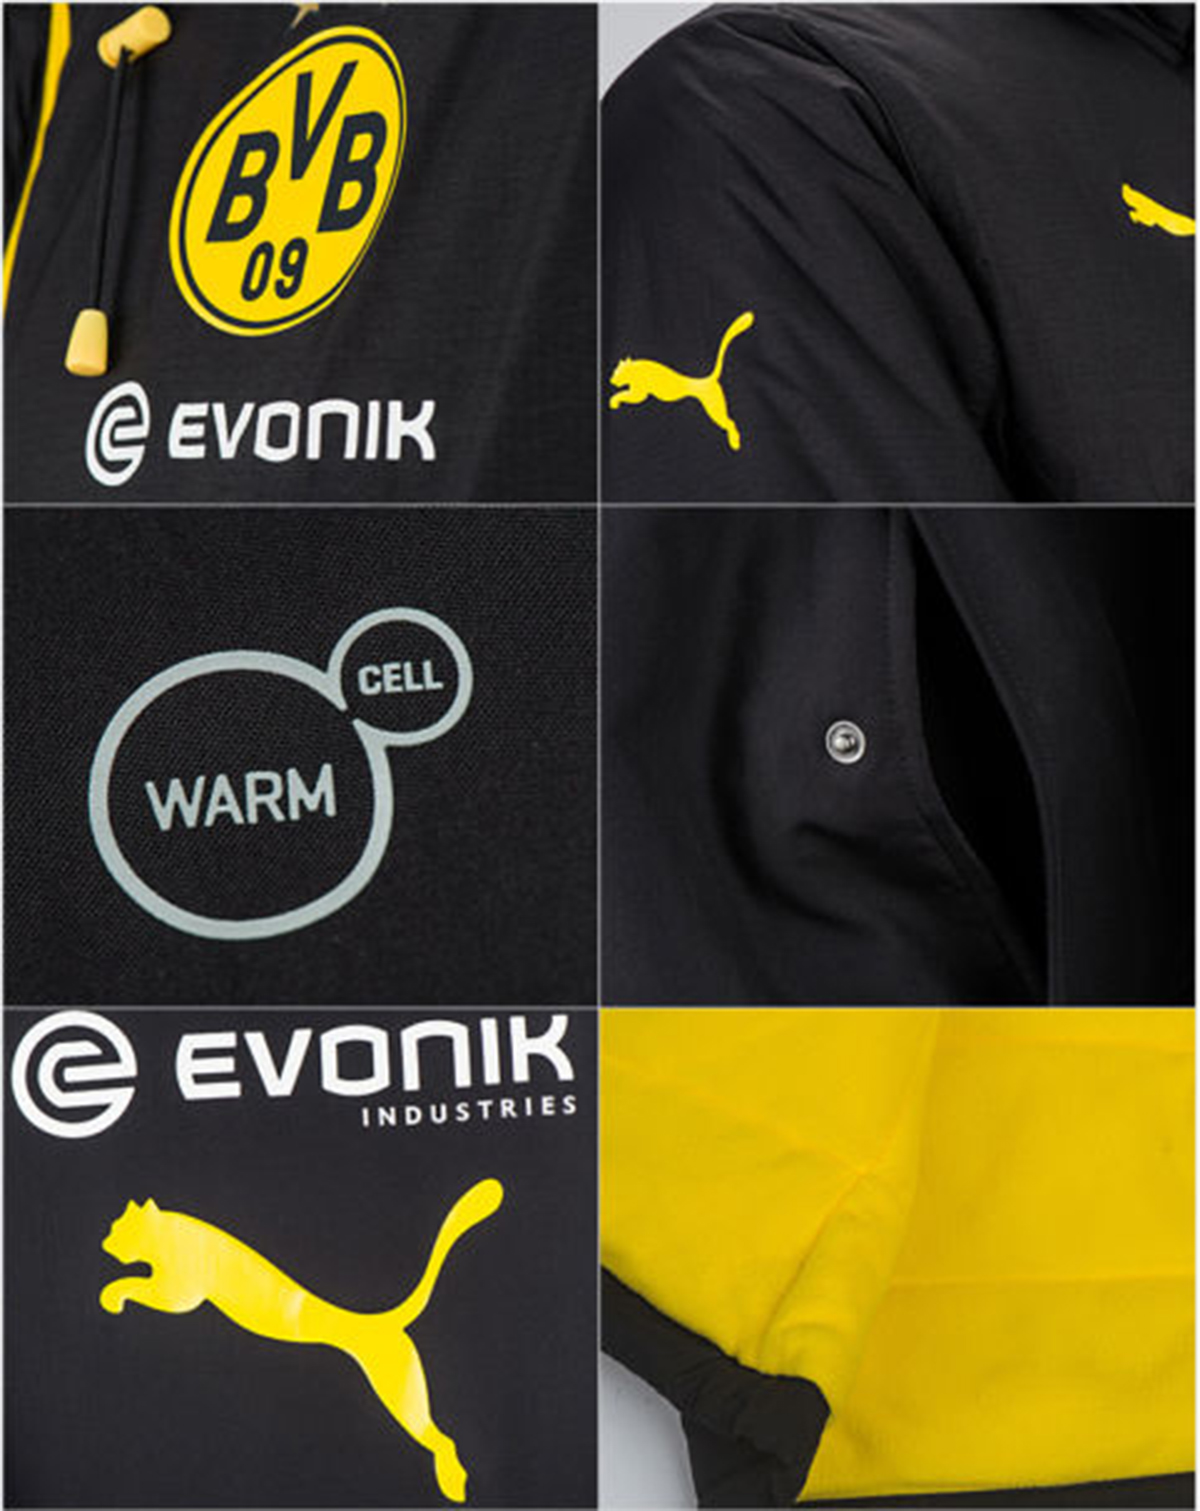 Puma BVB Bench Jacket Herren 750688 02 Borussia Dortmund Warm Cell